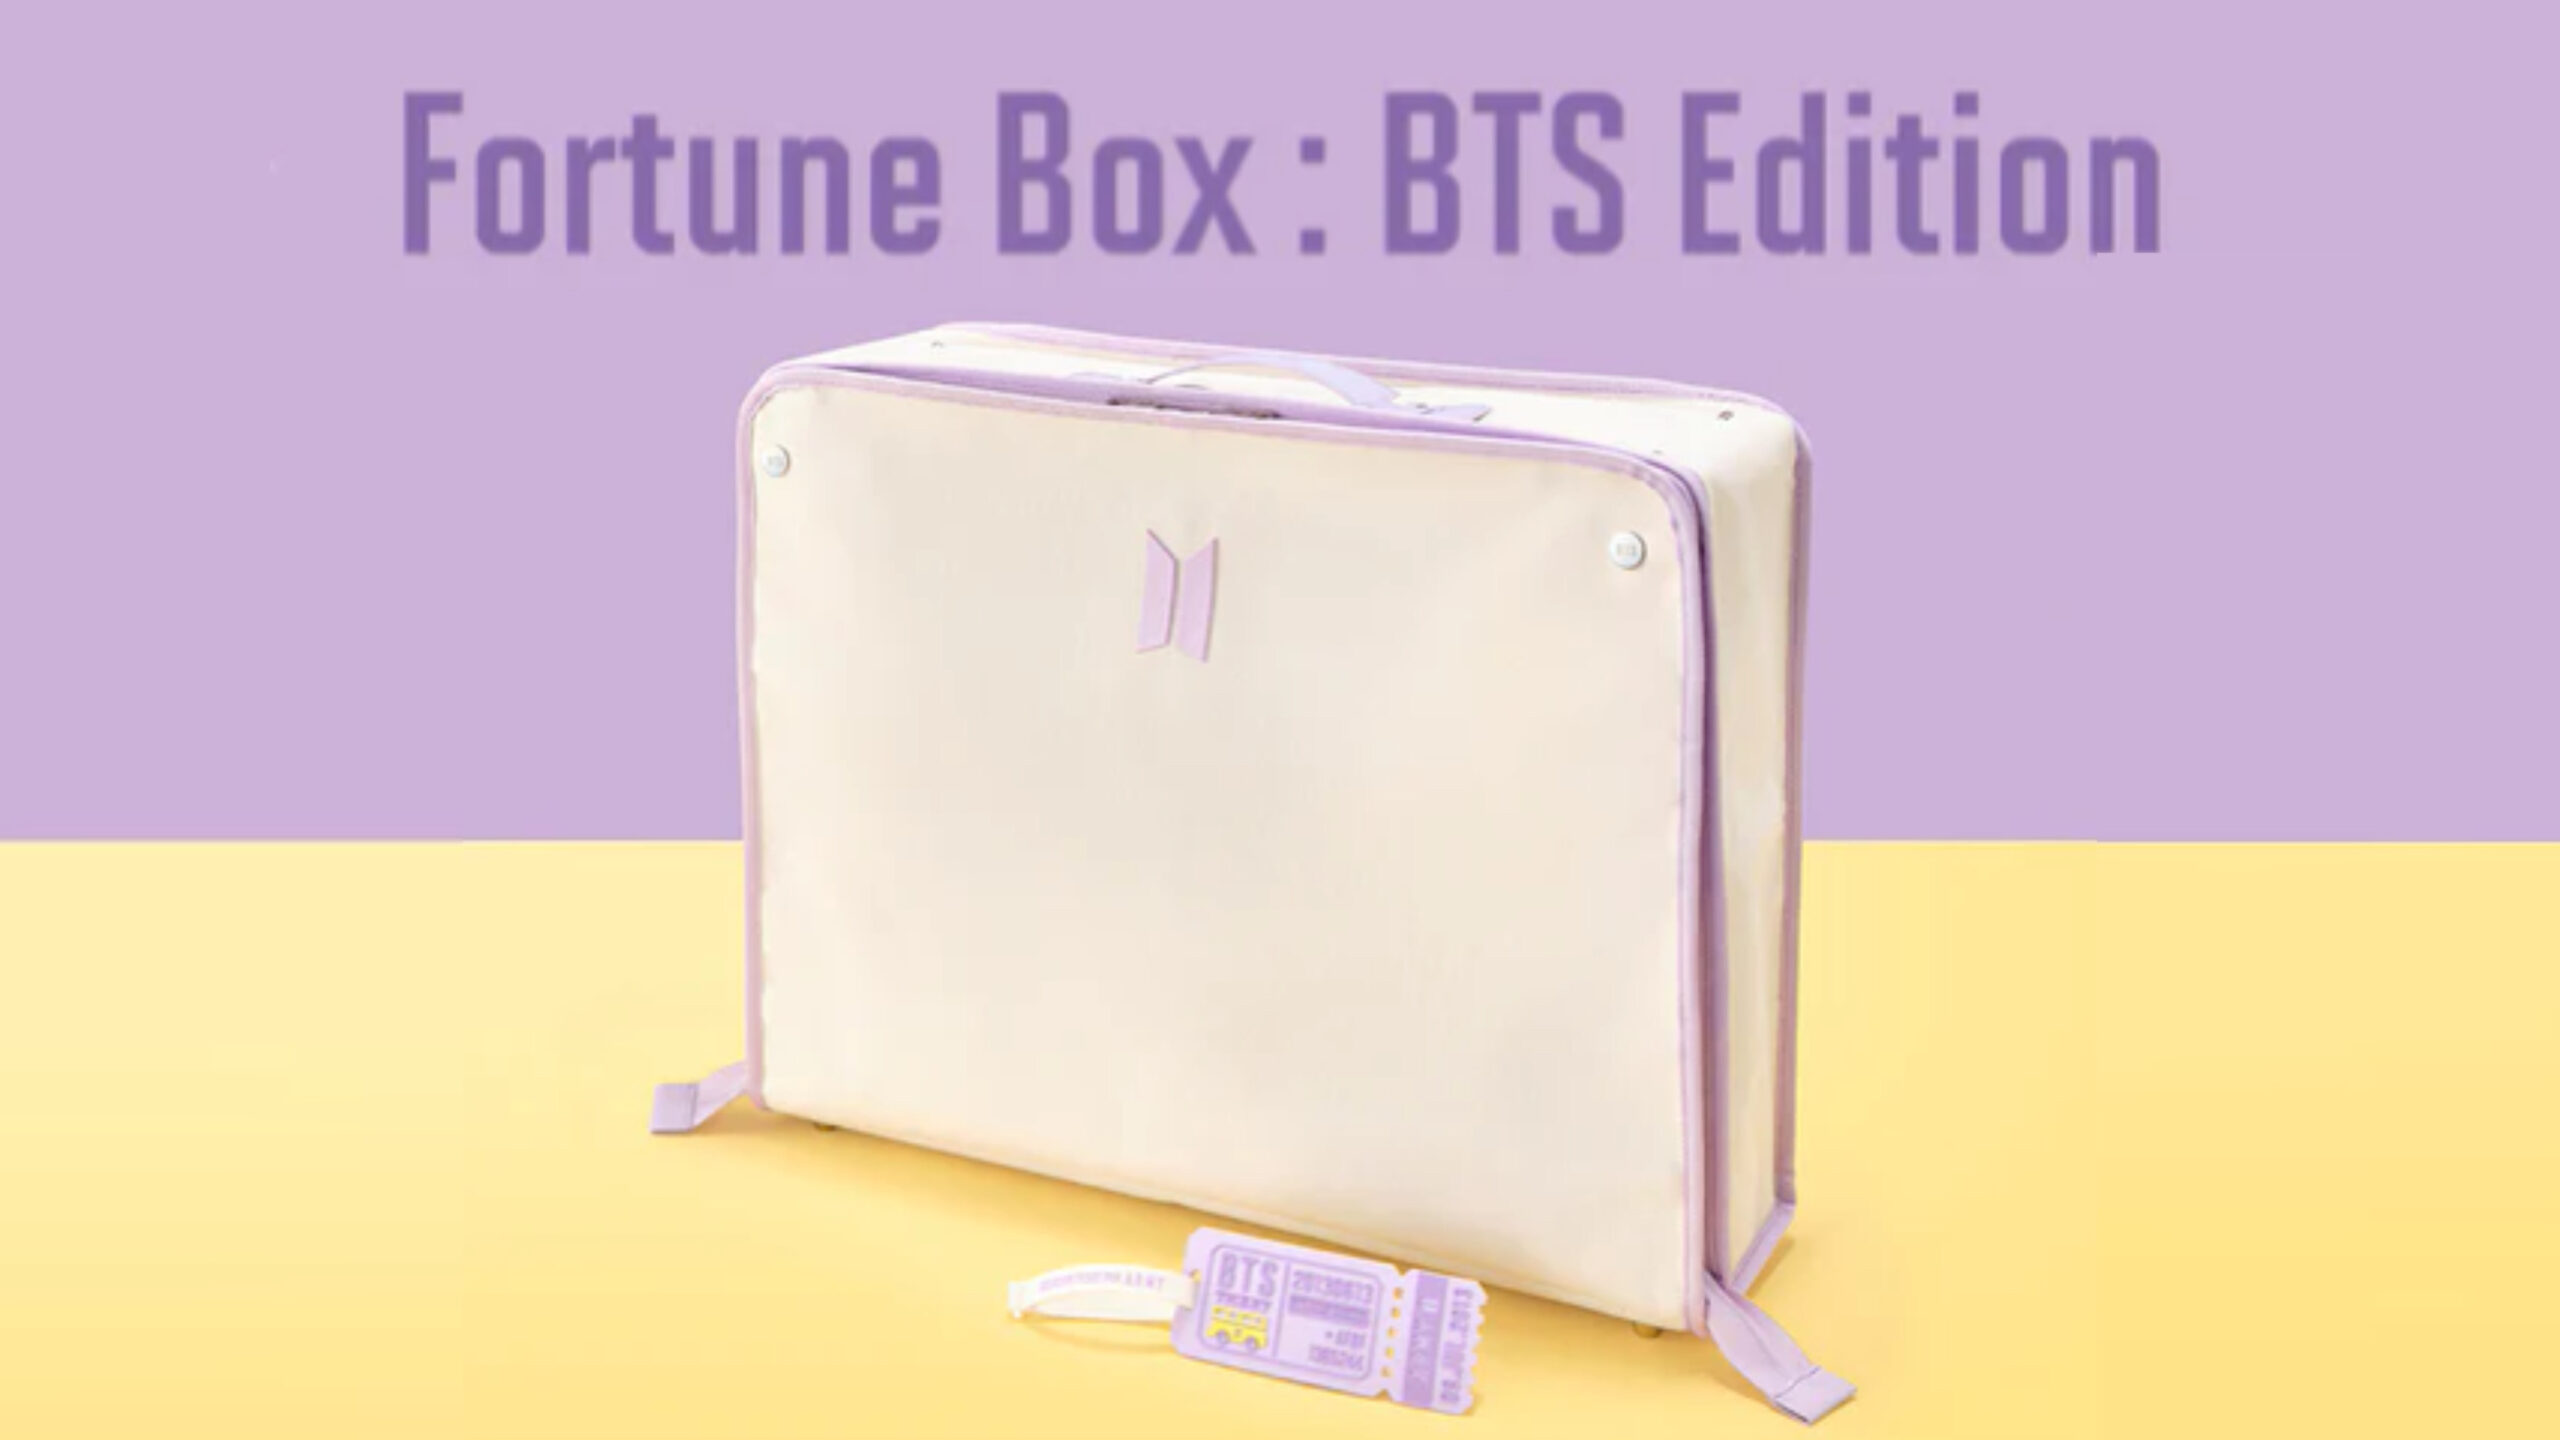 BTSの特別なボックスセット「Fortune Box : BTS Edition」が発売決定 